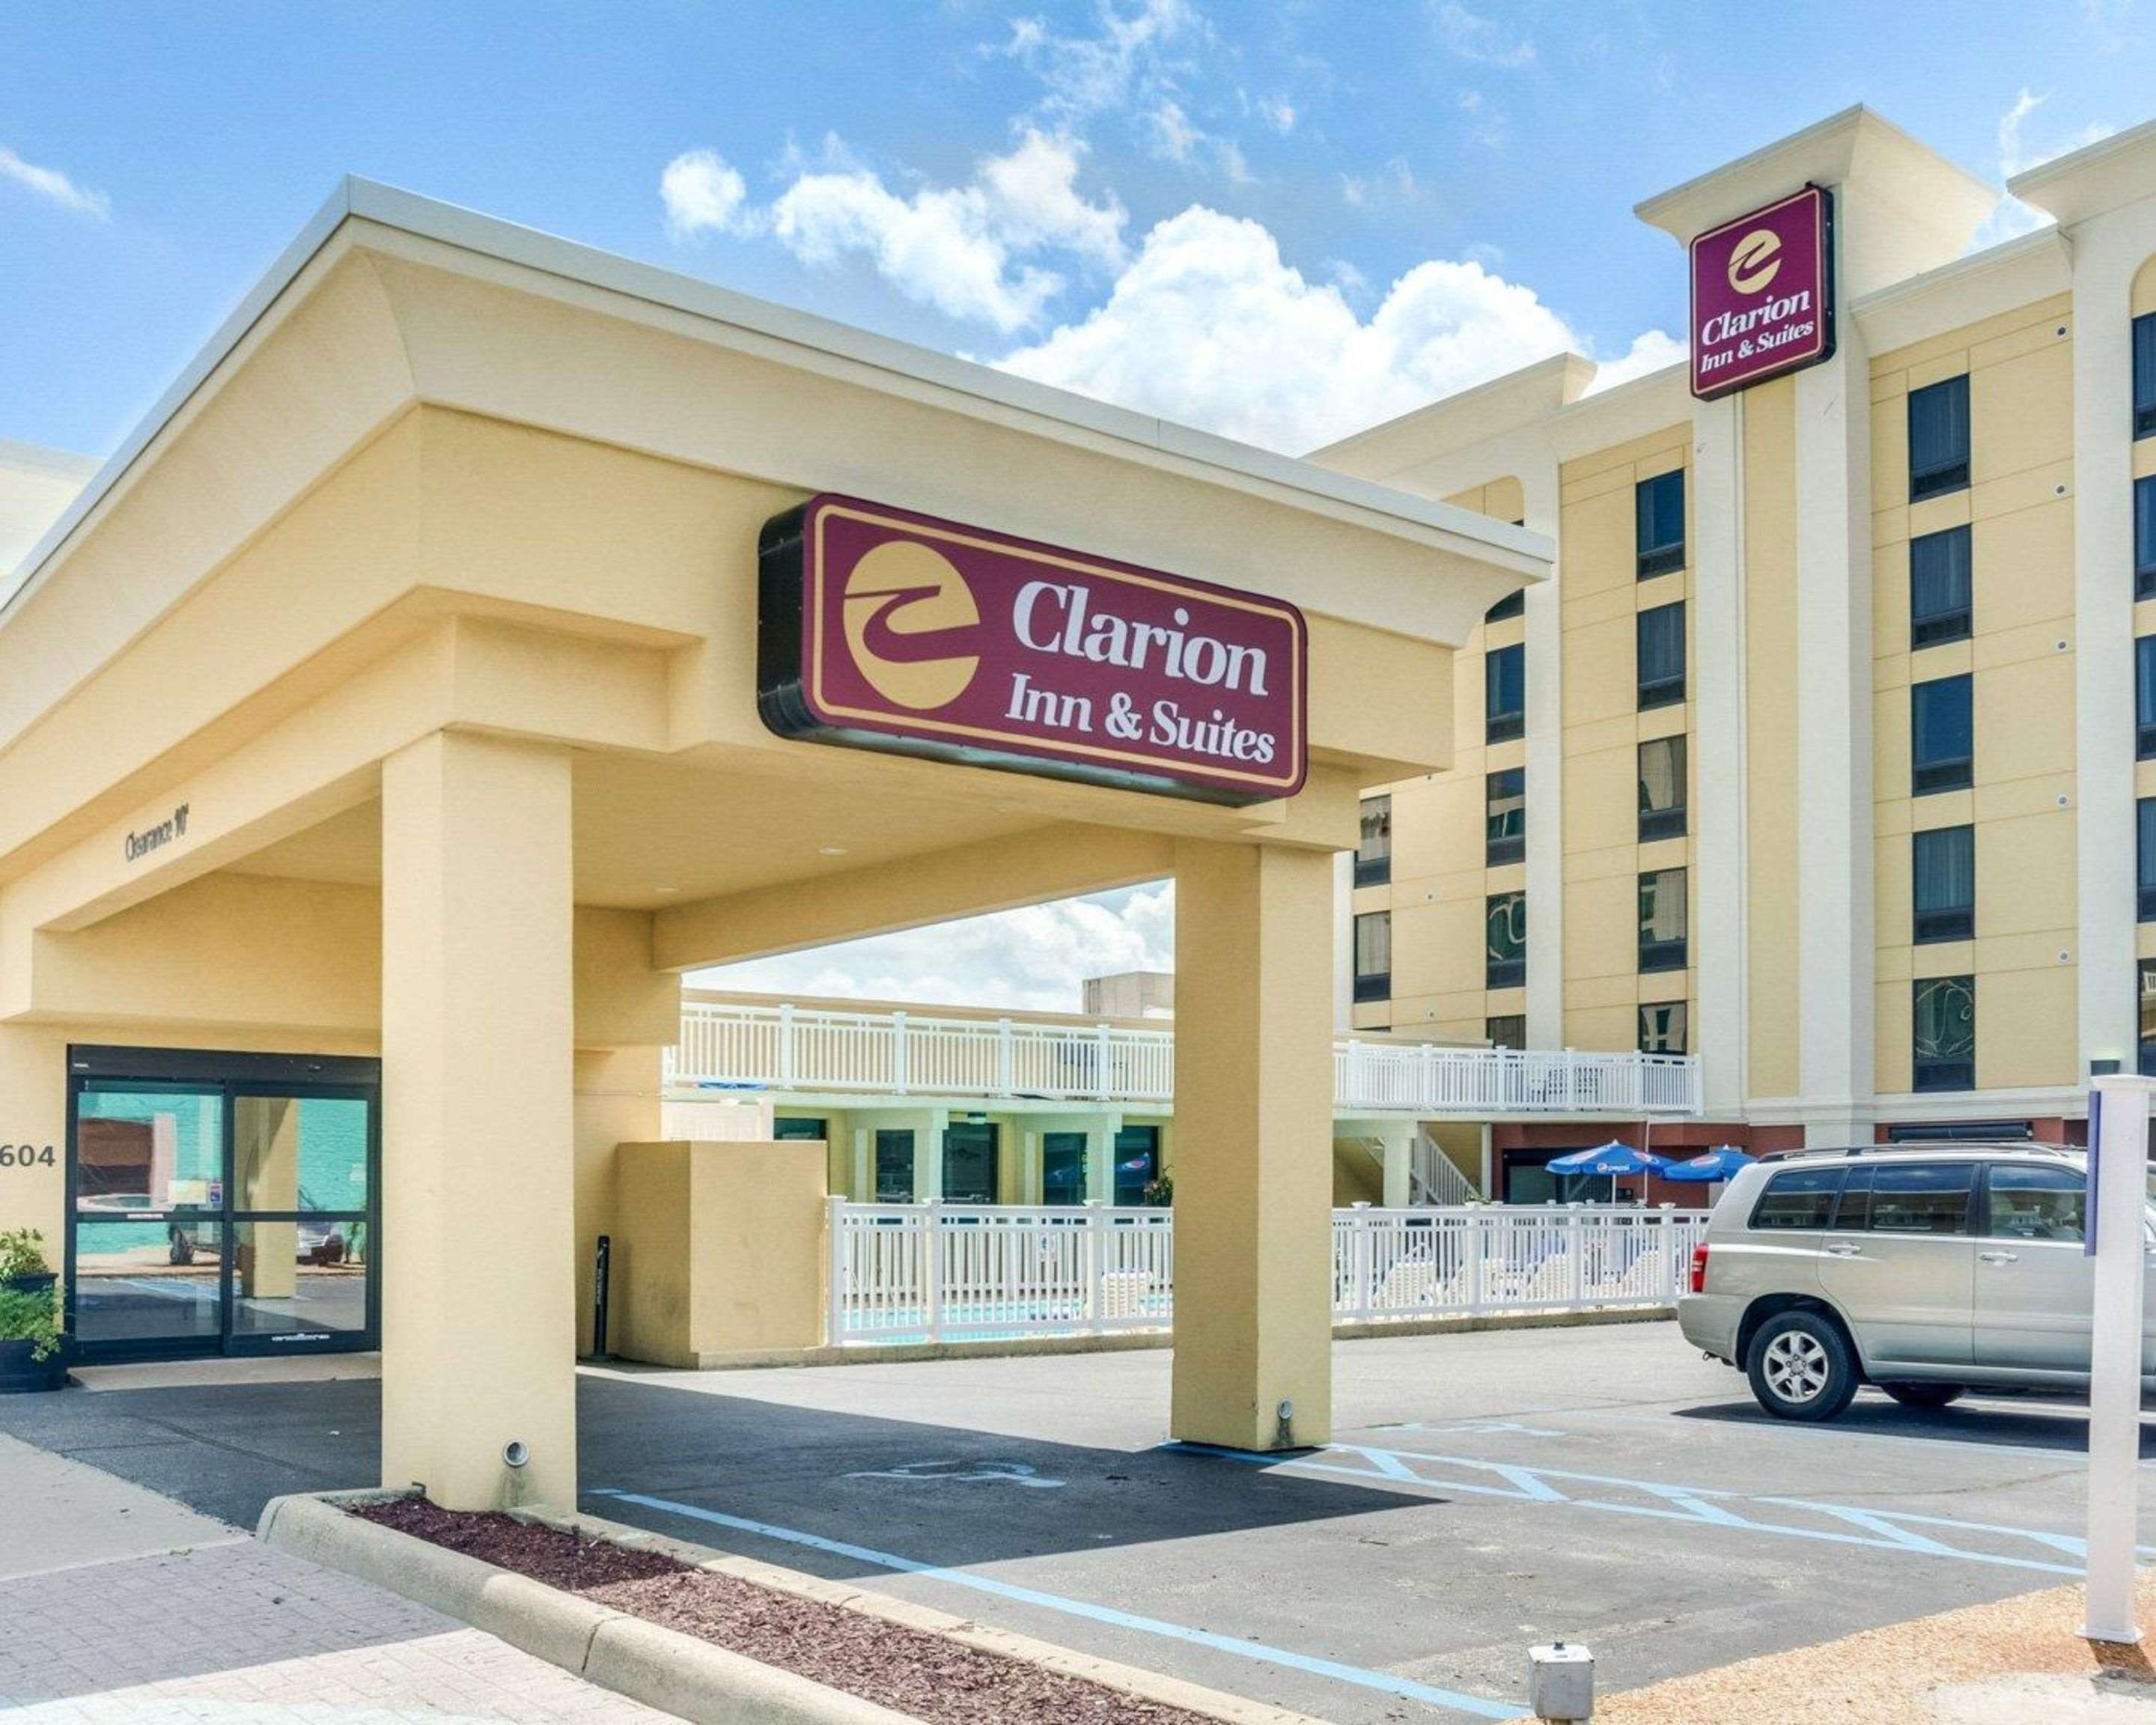 Clarion Inn & Suites hotel in Virginia Beach VA